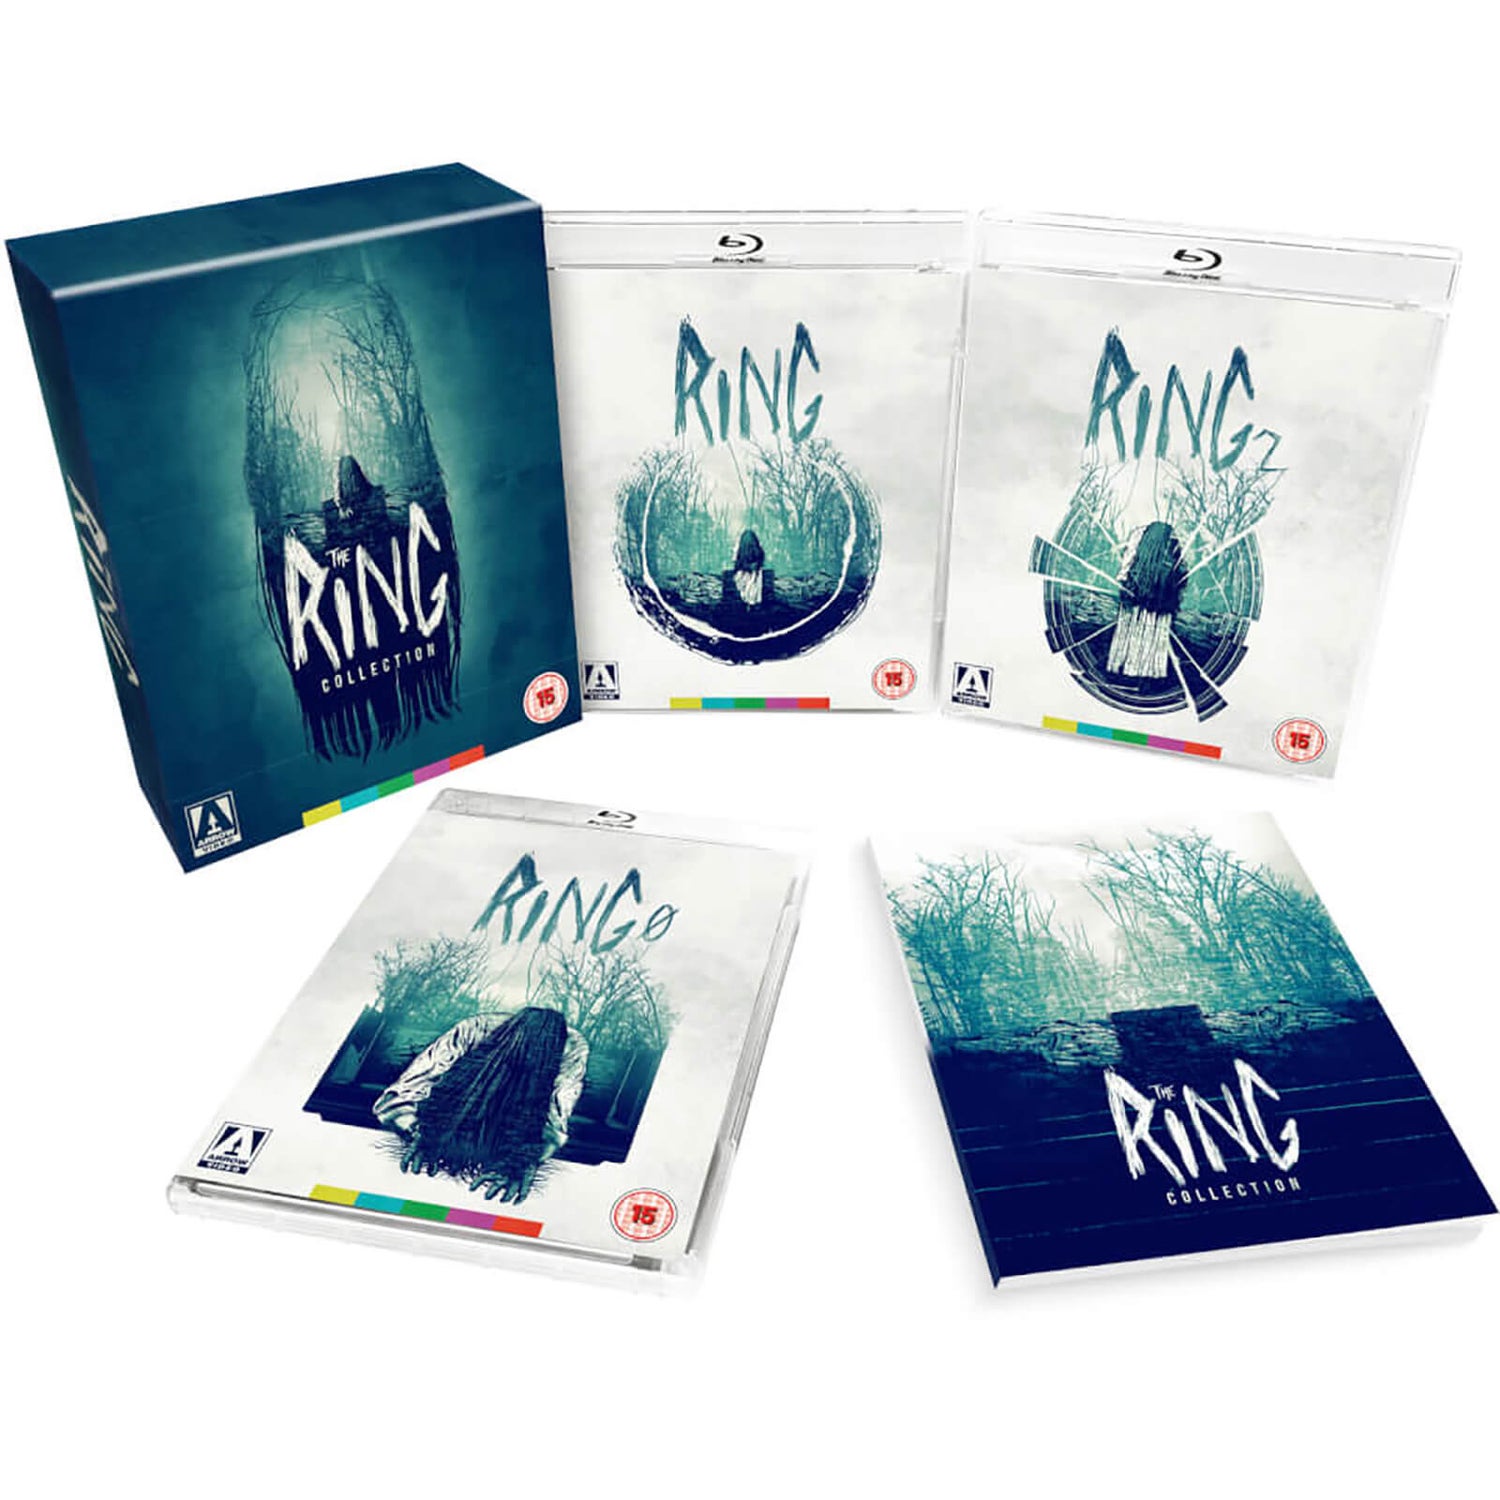 Ring Kollektion Boxset Limited Edition